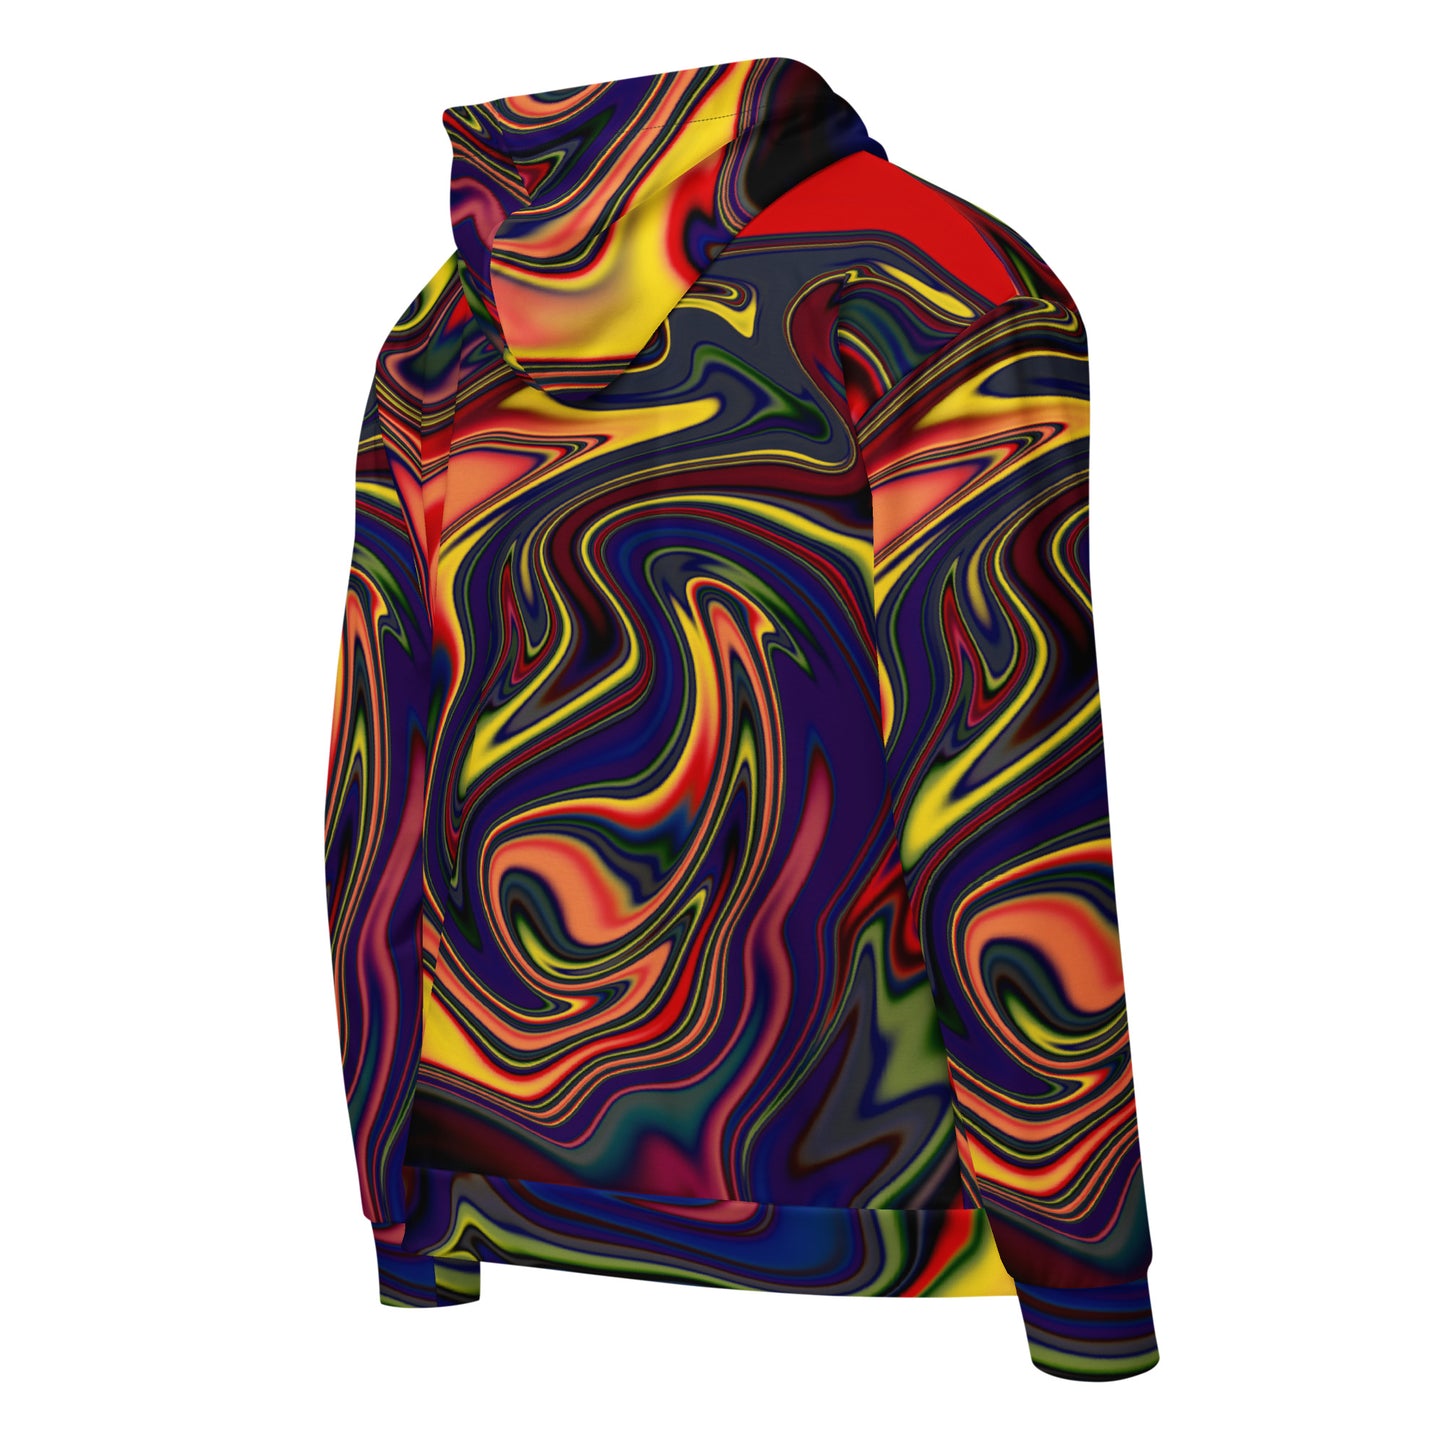 Magma zip hoodie